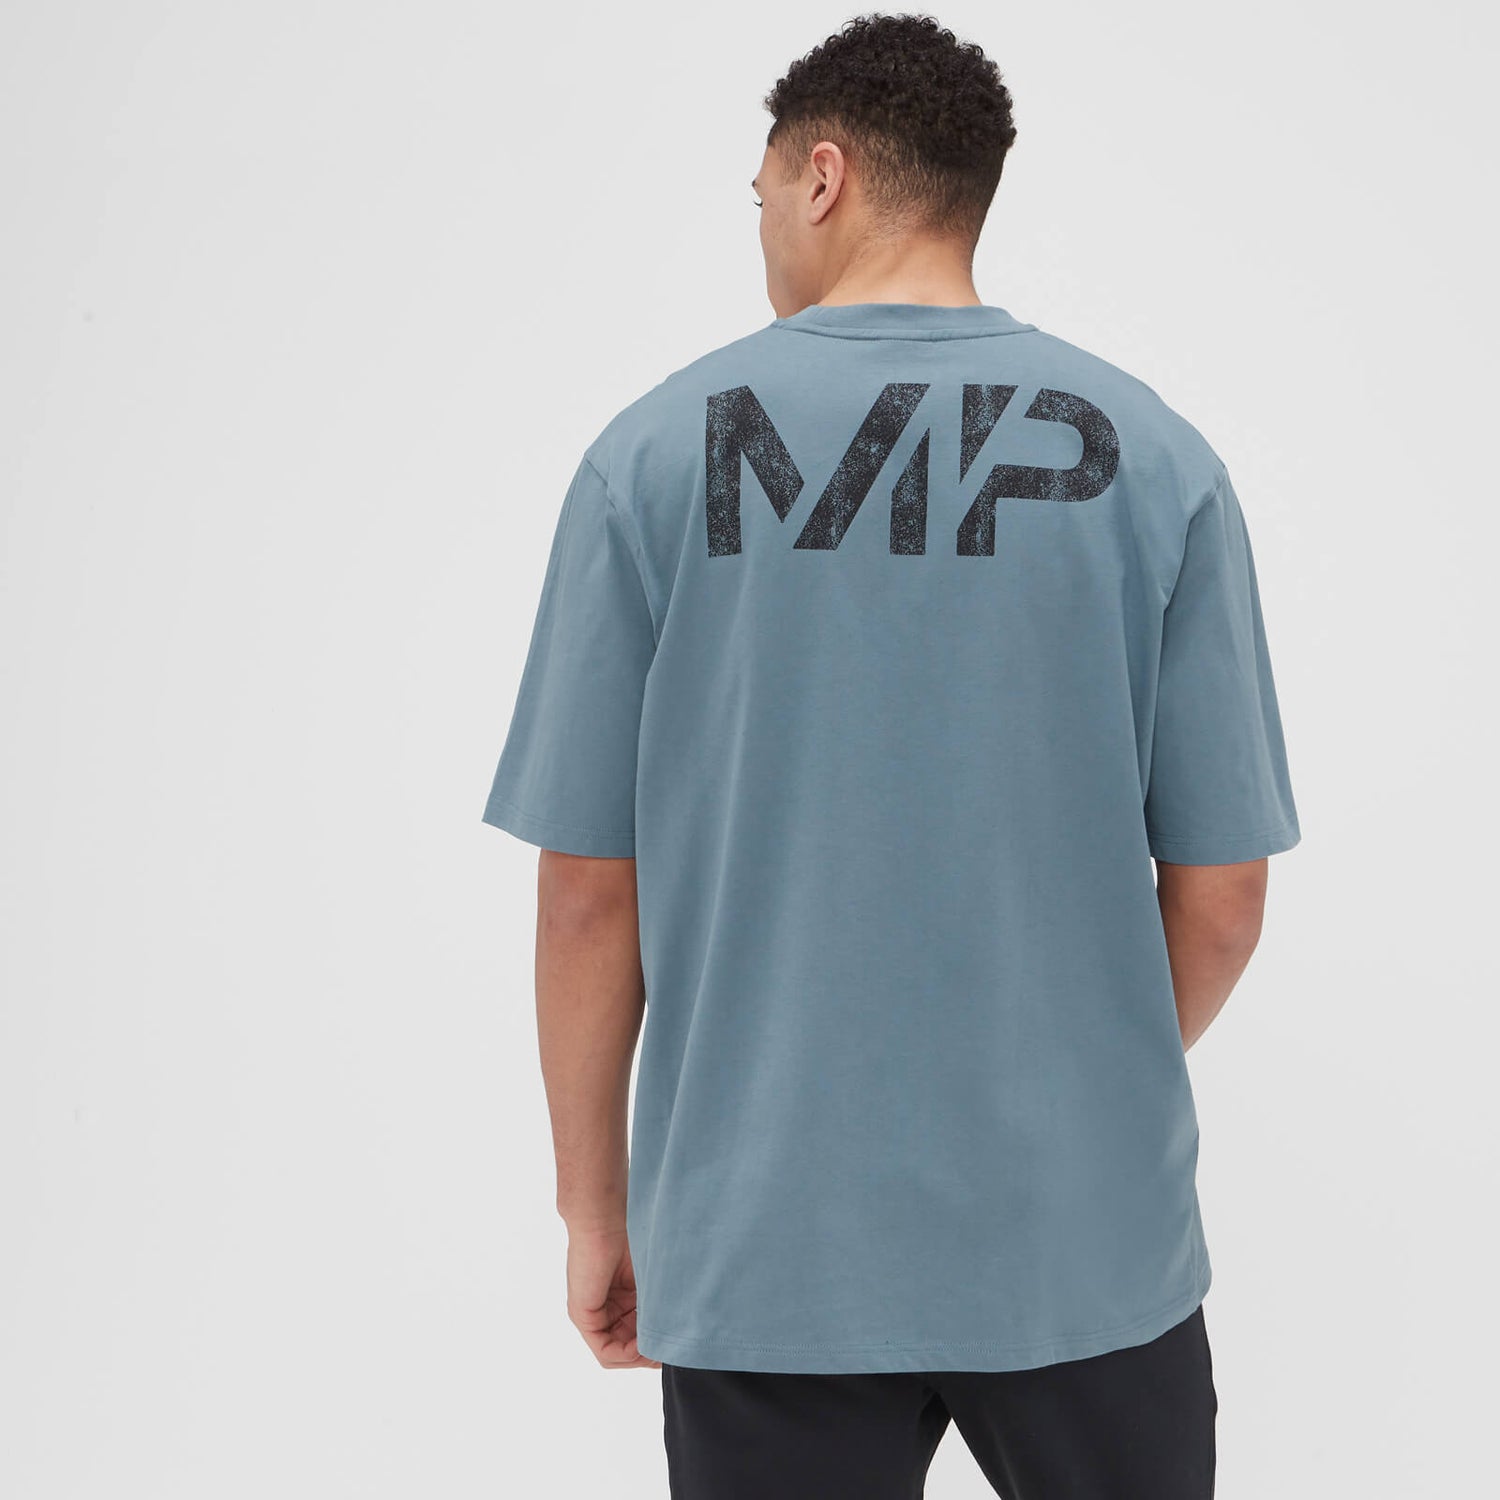 MP muška Grit Graphics majica širokog kroja - šljunčano plava - XXS